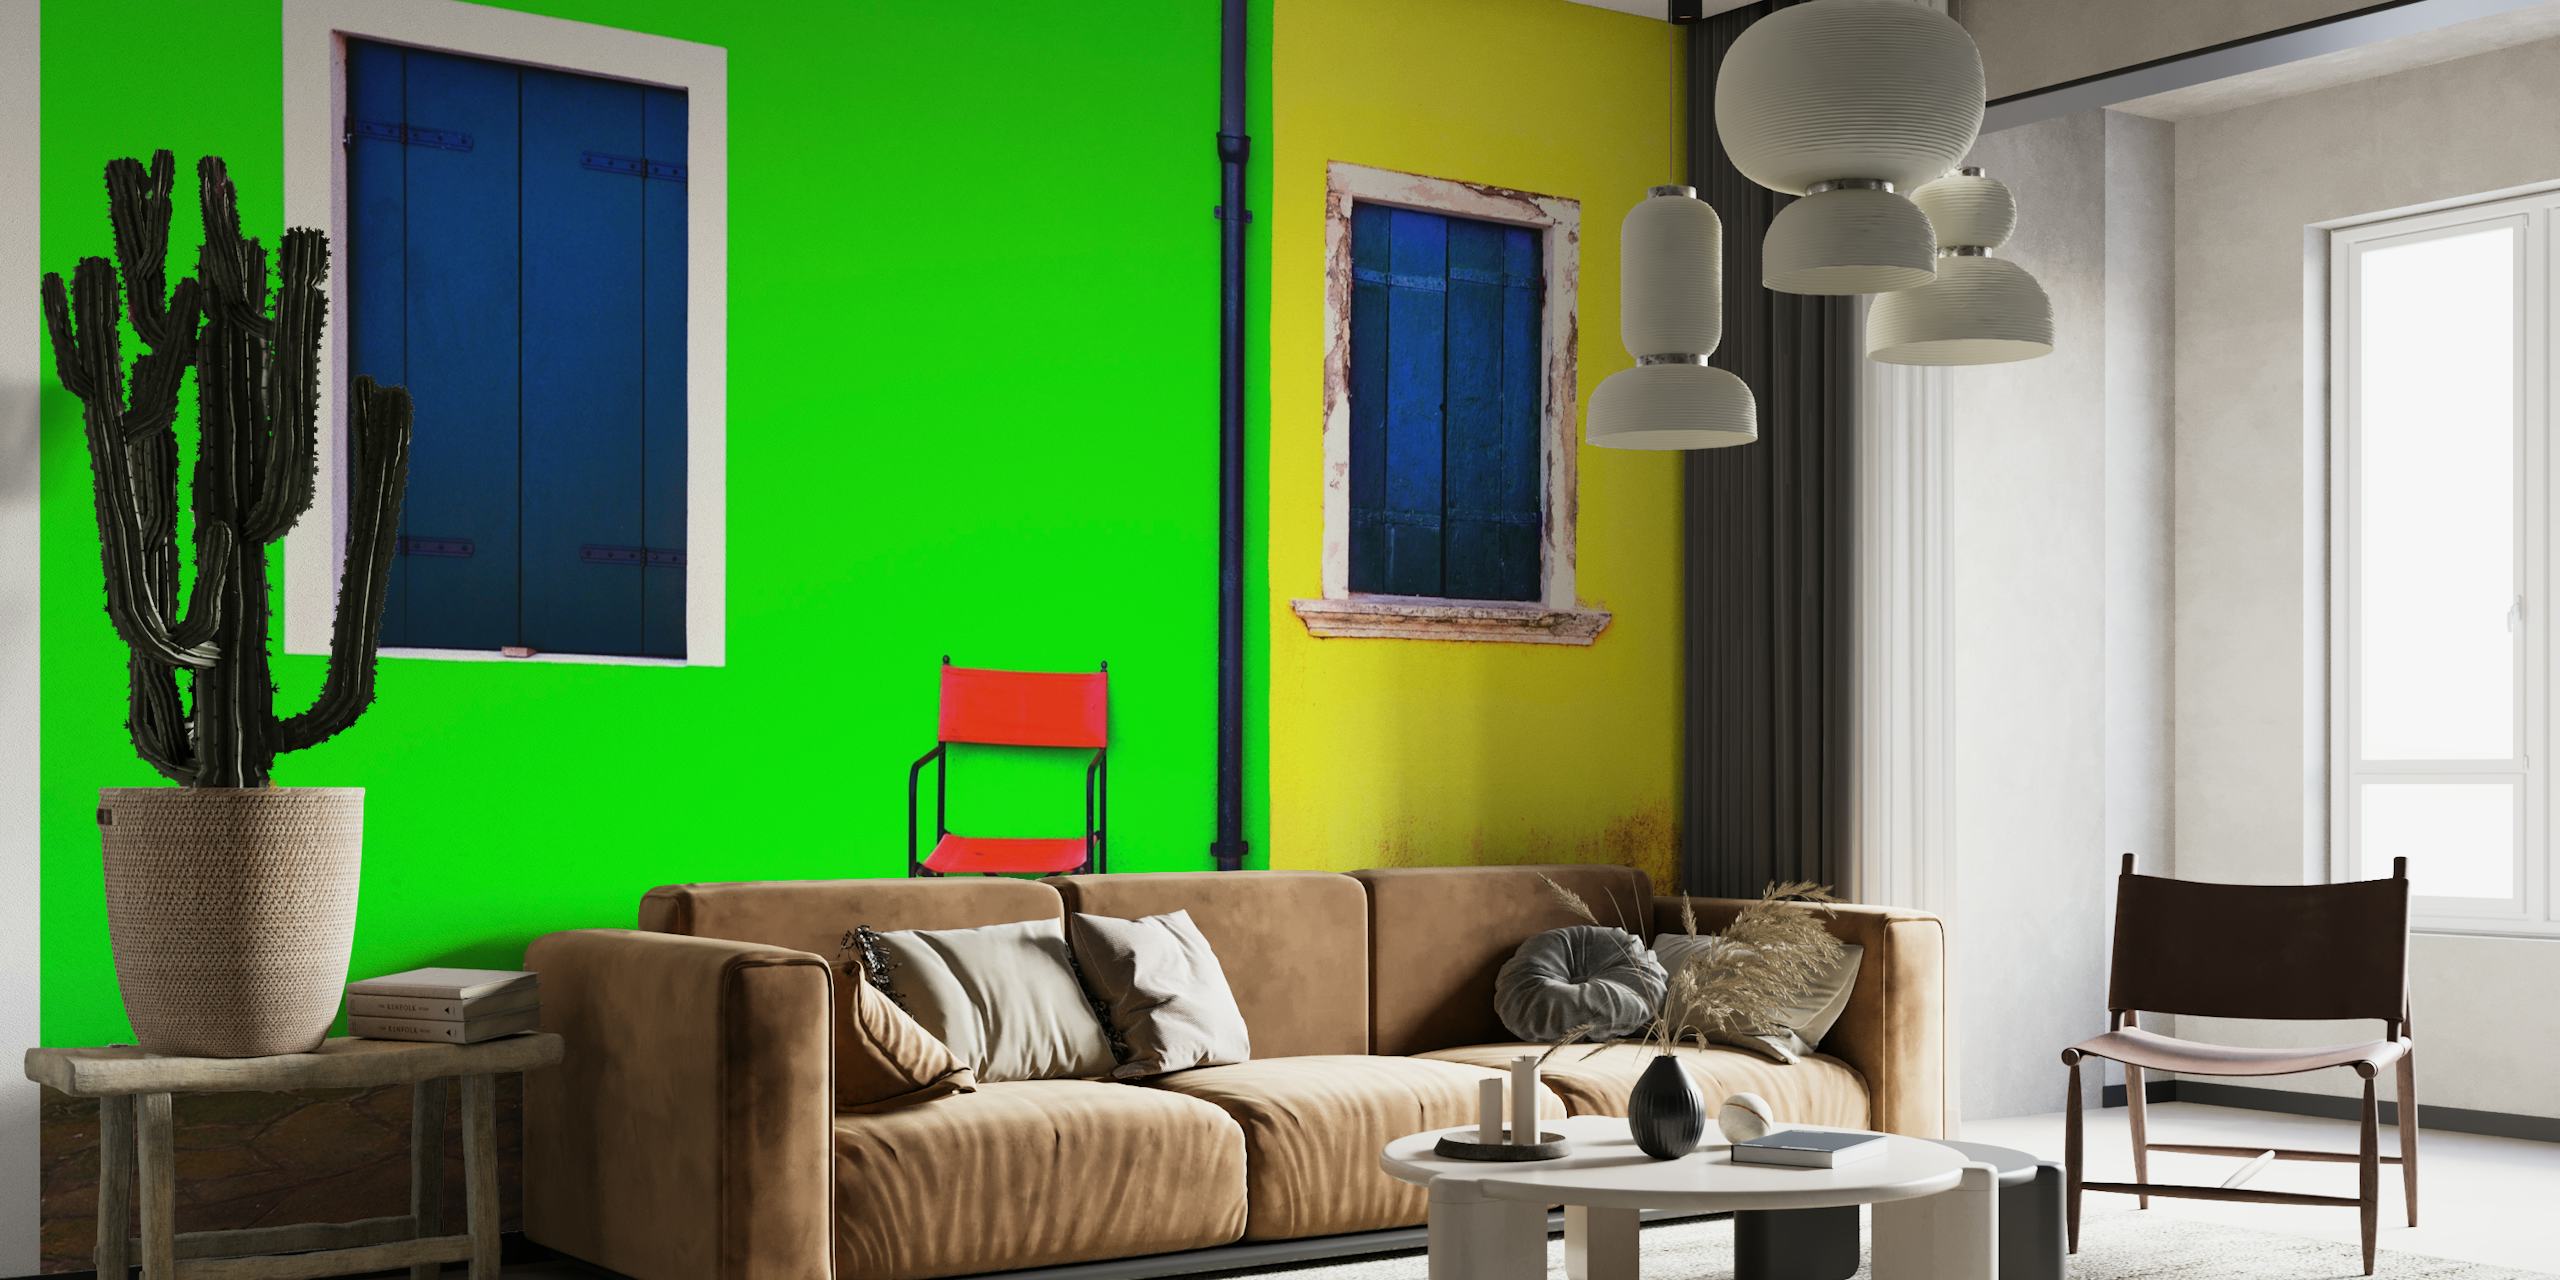 Fet og minimalistisk veggmaleri med en grønn vegg med et blått vindu, en gul vegg med et blått vindu og en rød stol